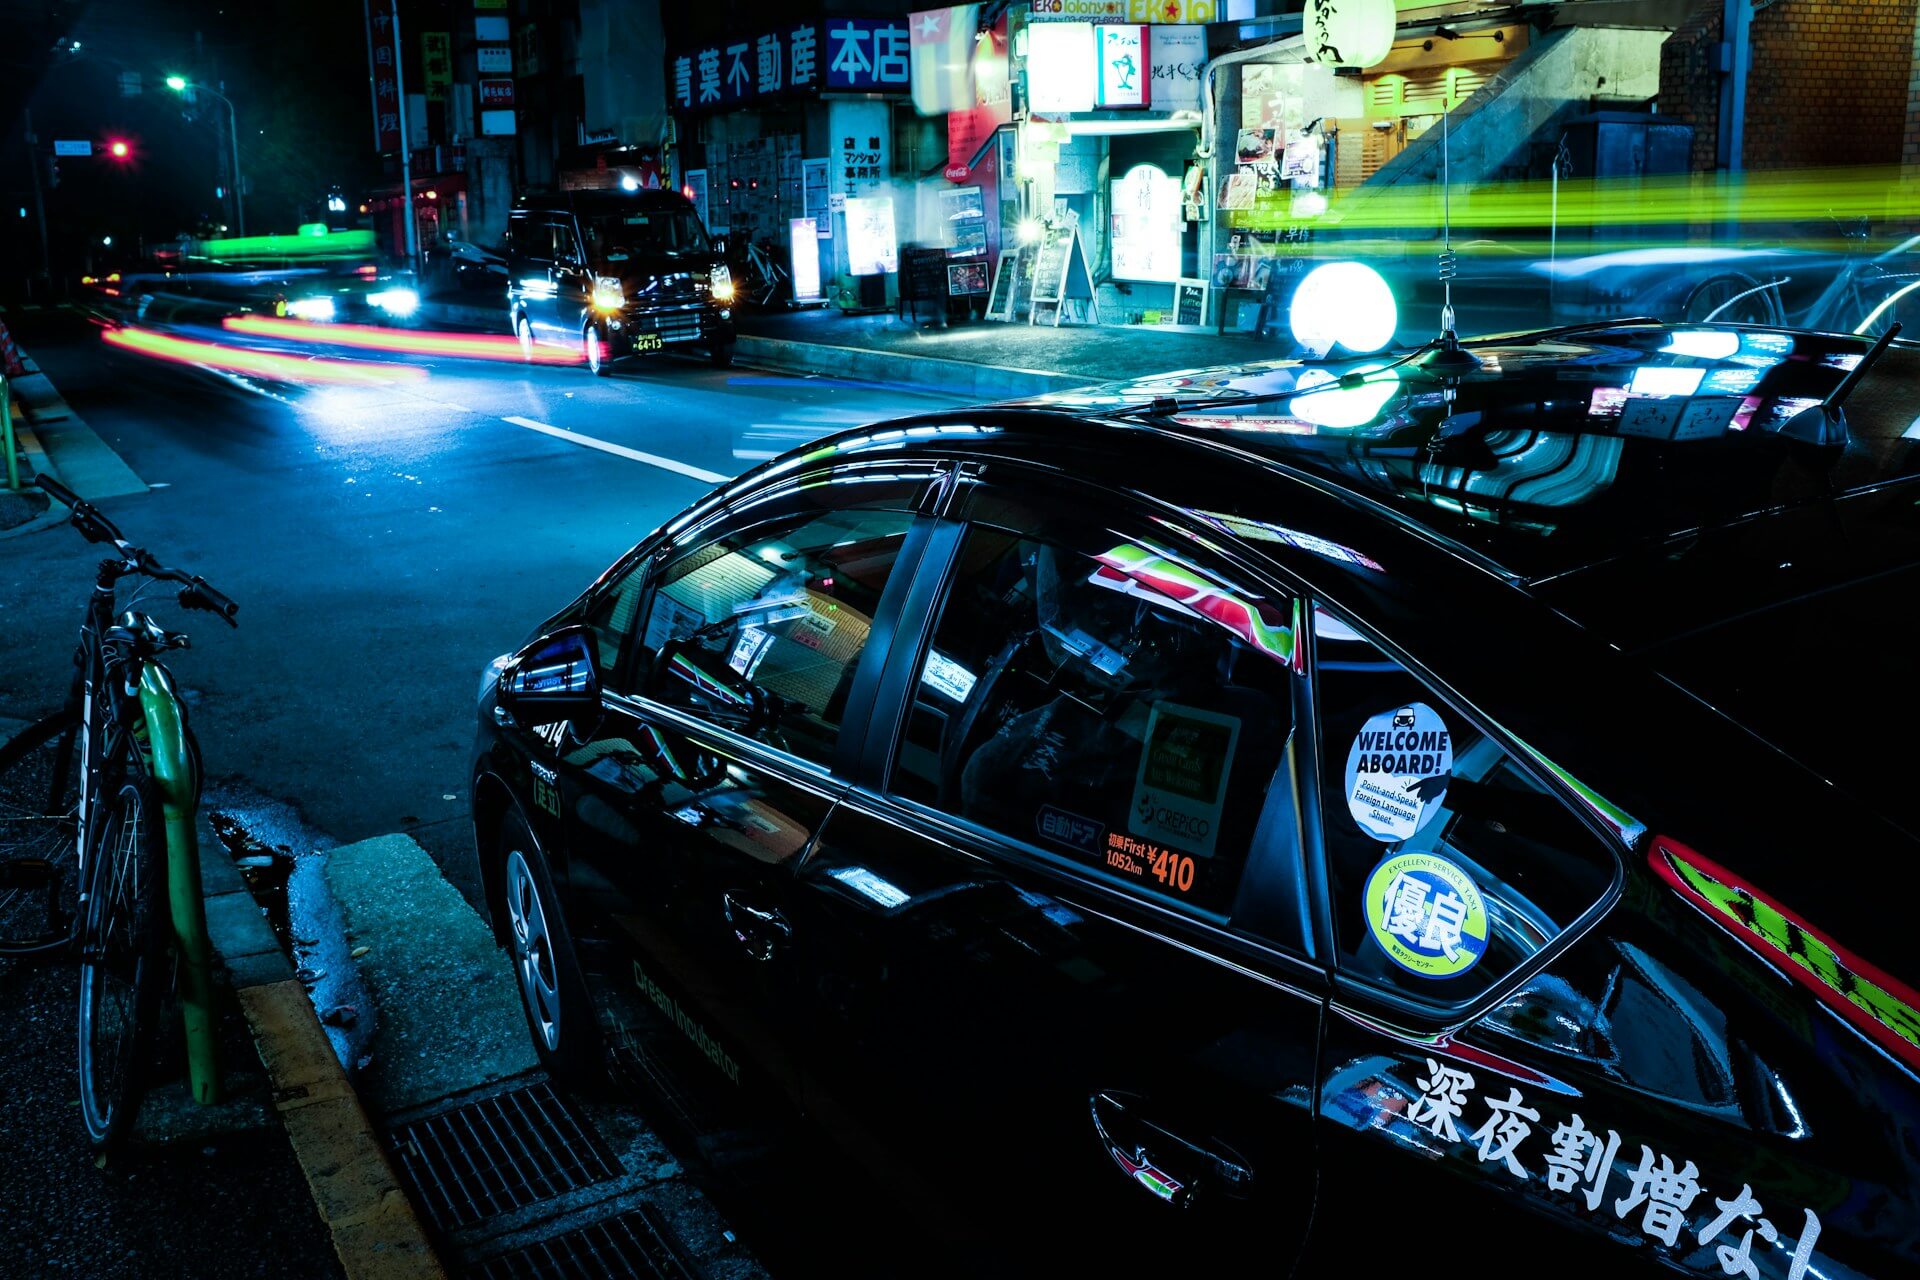 福生市でタクシー求人を探すデメリット・注意点